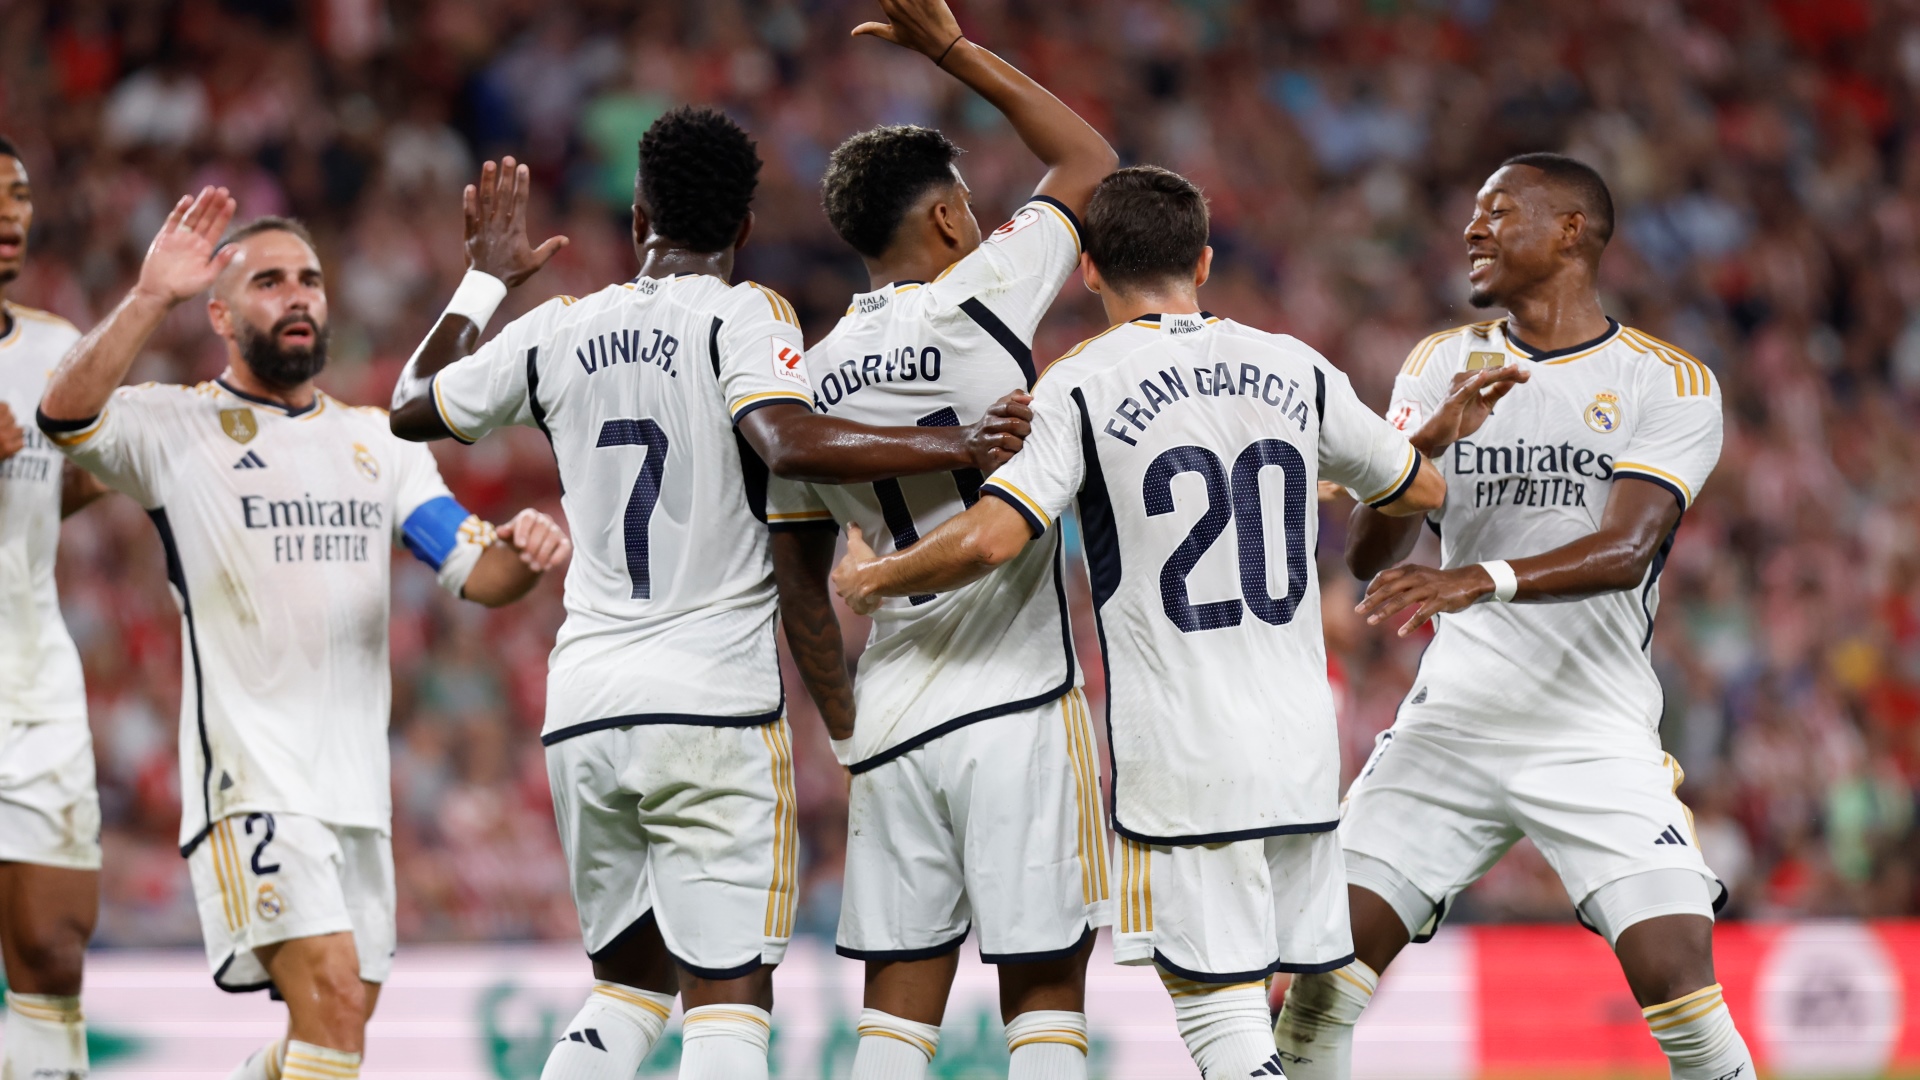 Real Madrid : ça commence à chauffer dans le vestiaire